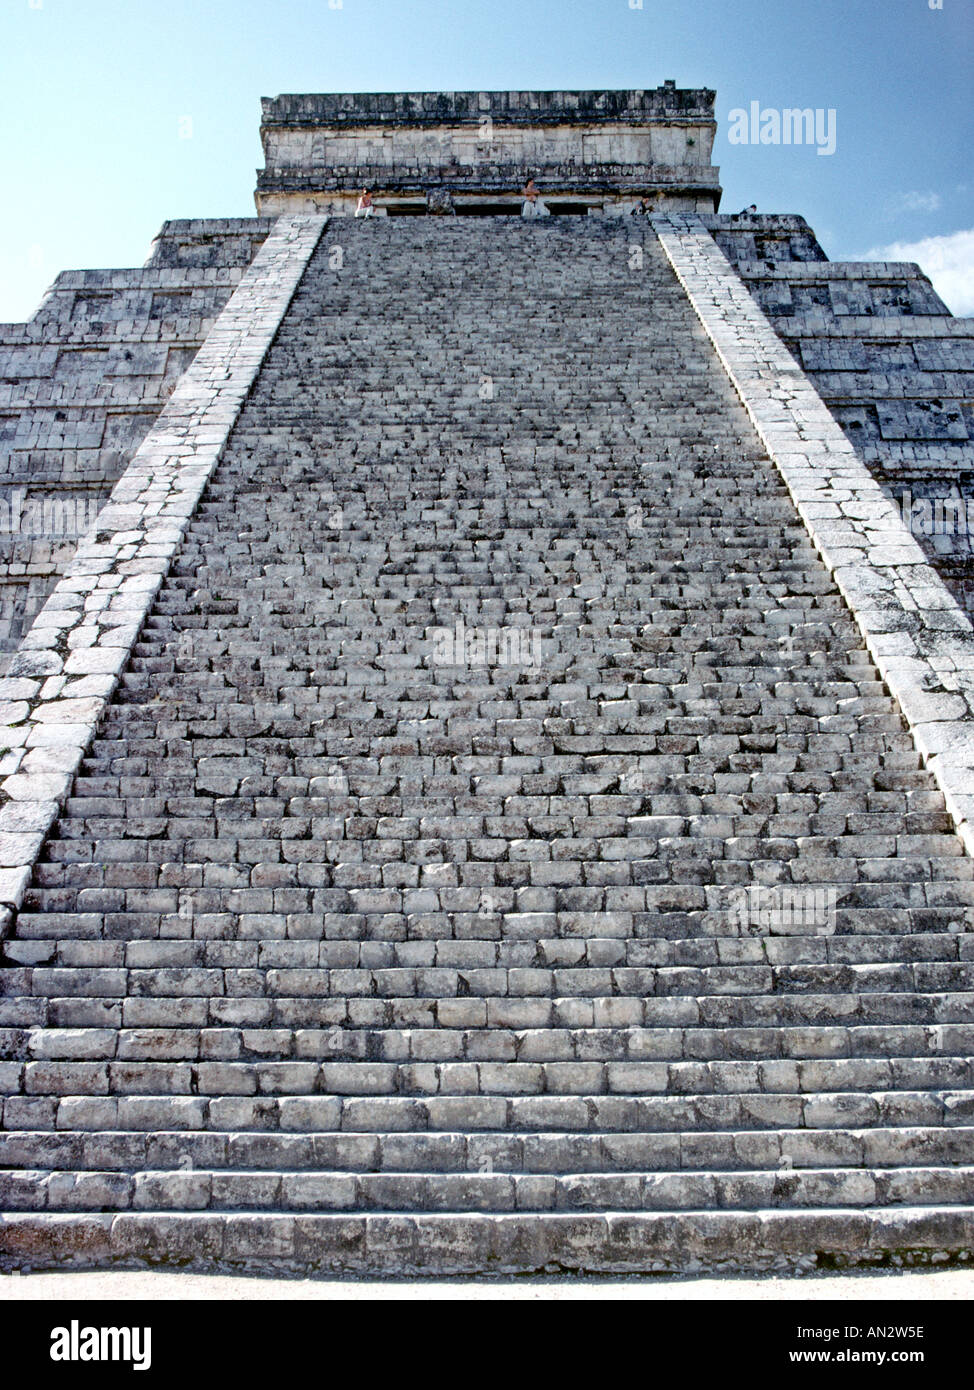 Les 91 étapes de "El Castillo", le point focal de l'historique du site archéologique de Chichen Itza au Mexique de l'état du Yucatan. Banque D'Images